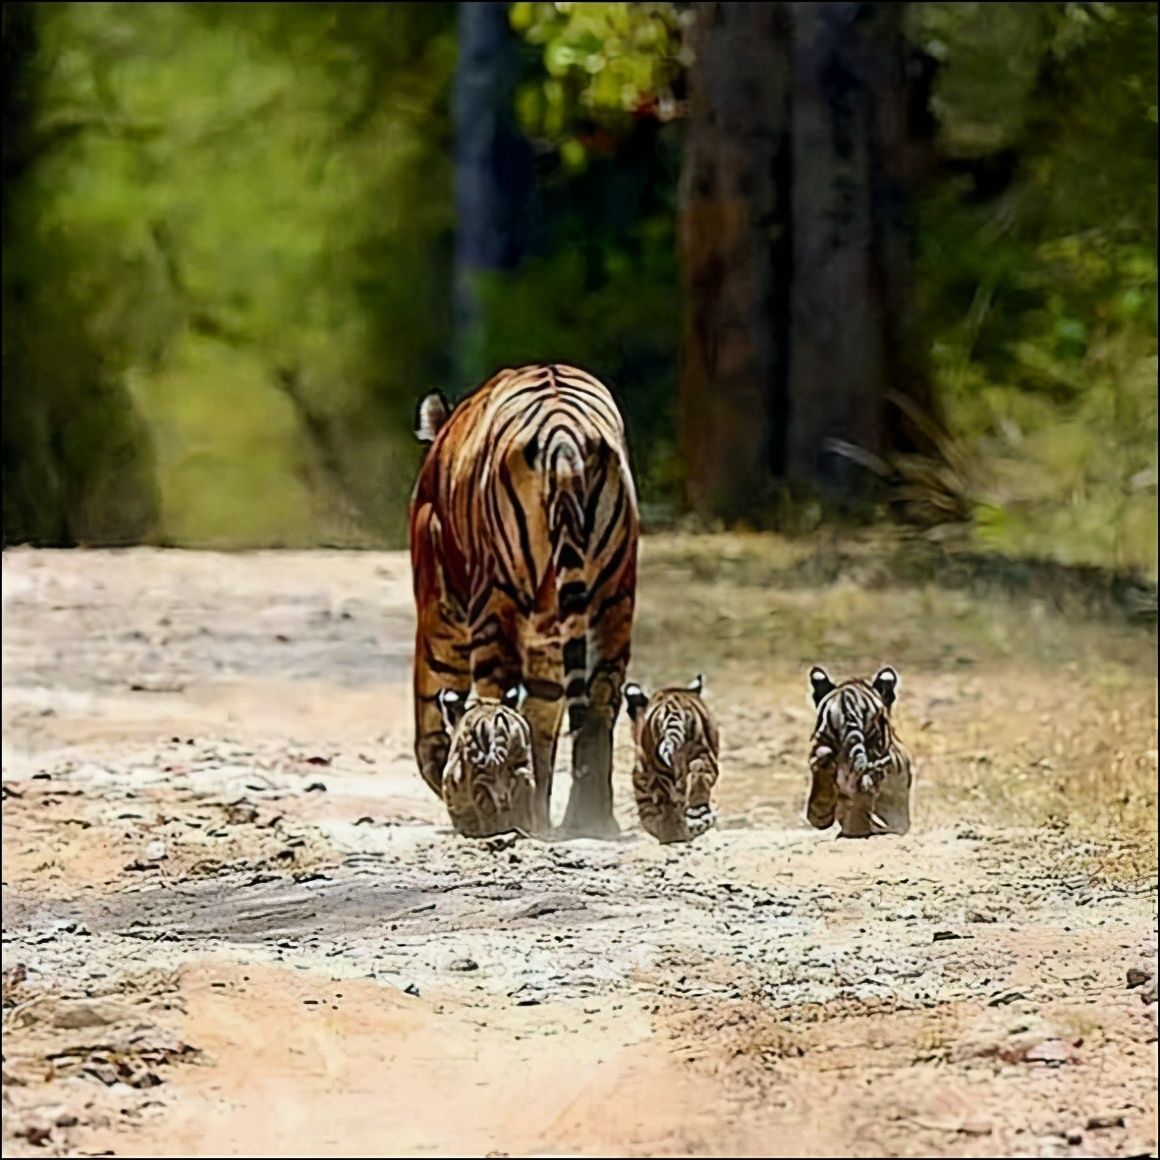 邓州豹子跟老虎图片